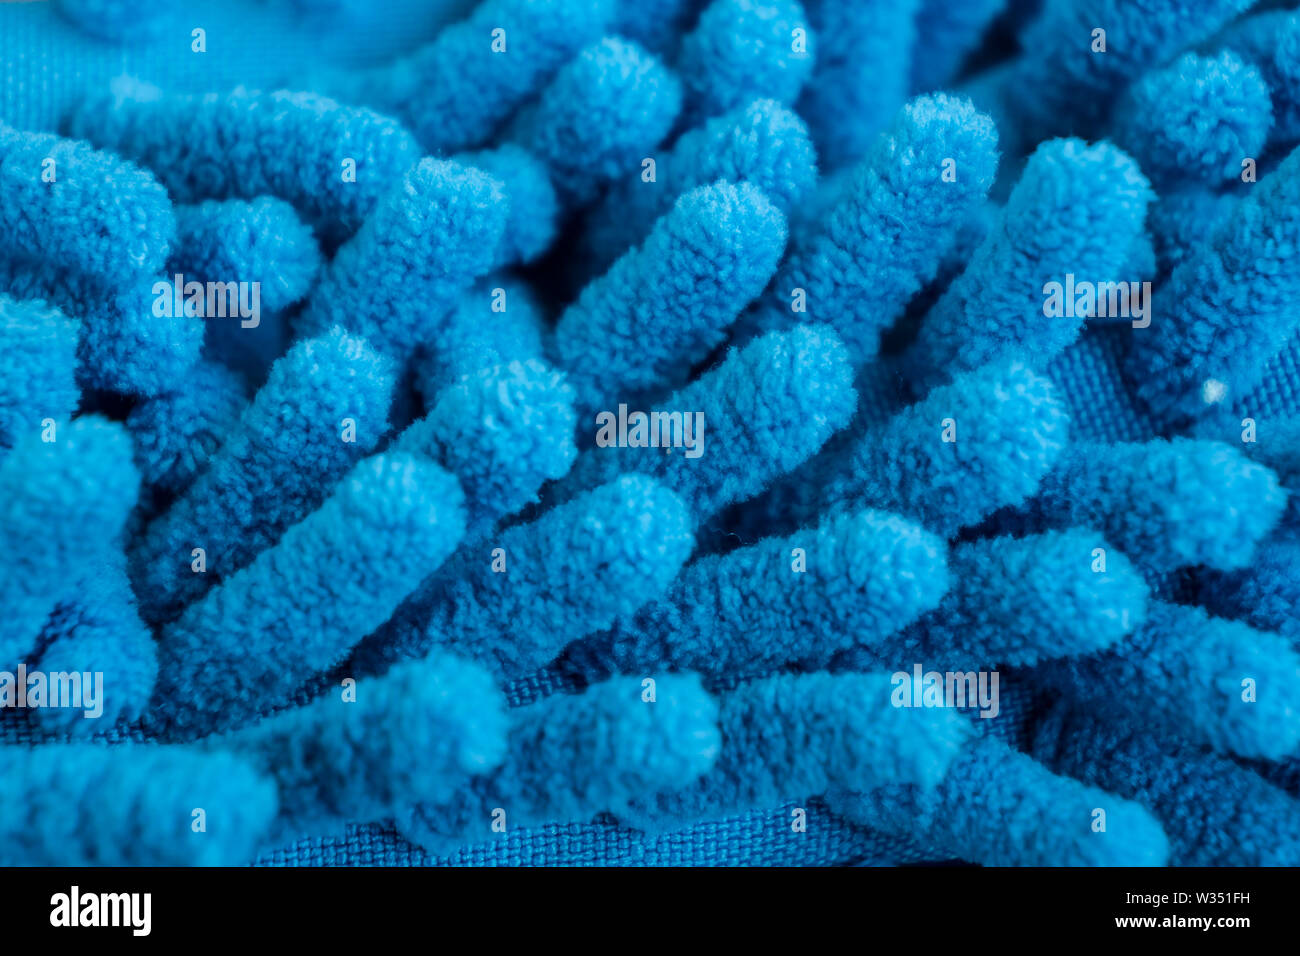 Makro Nahaufnahme der Blauen chenille Microfaser Textur für Reinigung und Trapping Staub. Microfaser Staubtuch closeup mit Fasern Texturen - soft machine Wash Stockfoto